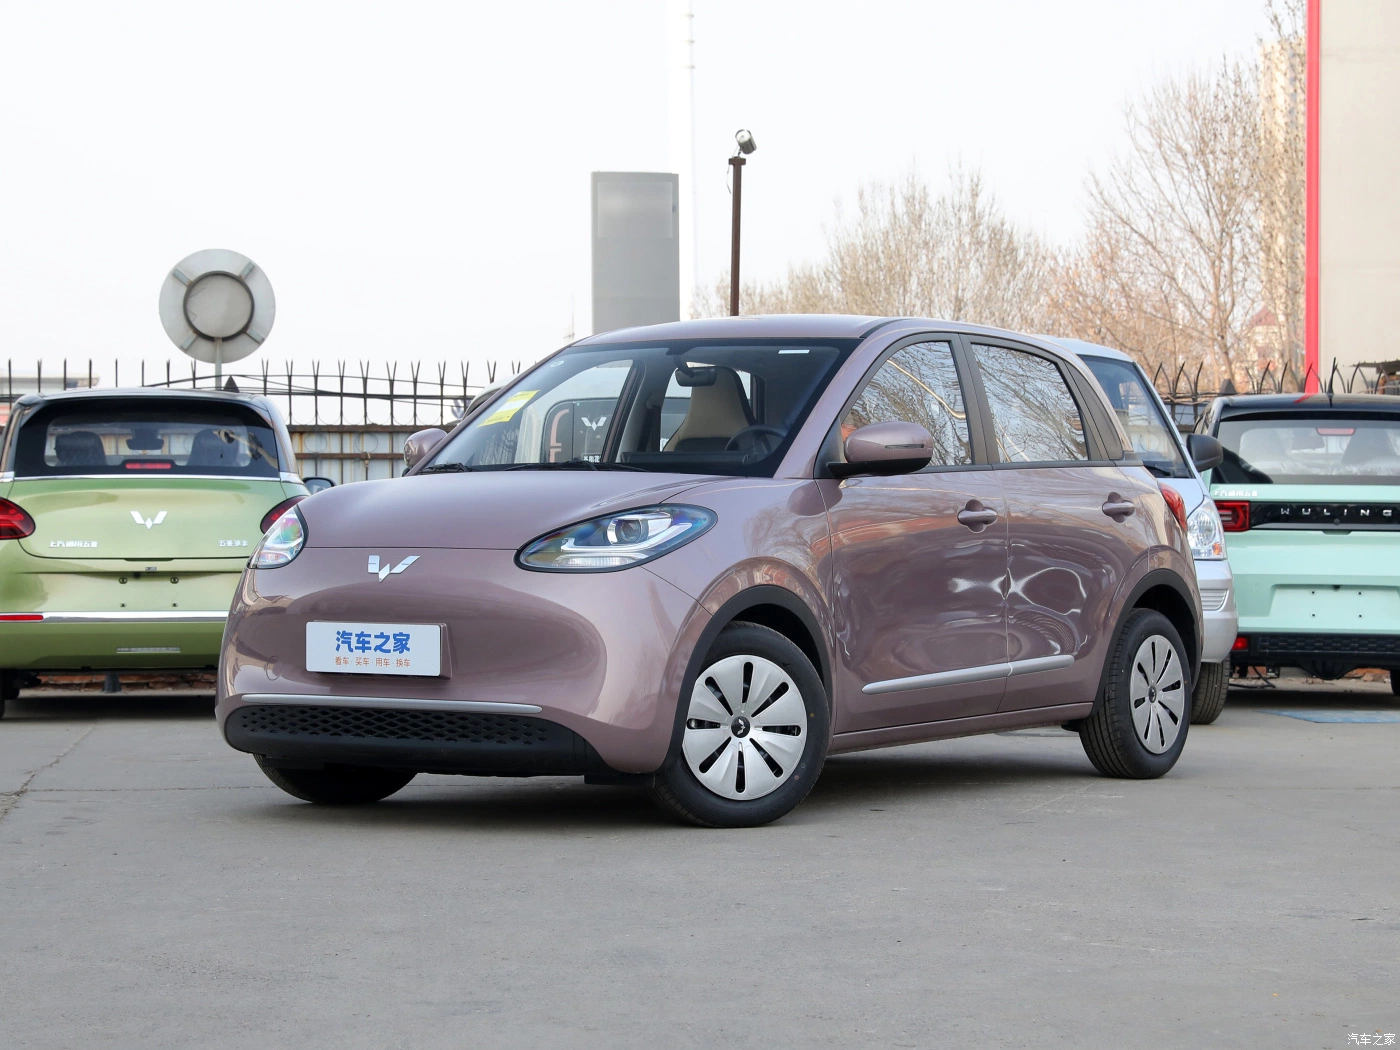 أوكازيون ساخن في ستوك فولينغ وصول جديد بينجو 2023 على بعد 203 كيلومتر سيارة كهربائية جديدة تعمل بتقنية Energy Smart بأربعة مقاعد ذات 5 أبواب مصنوعة في الصين